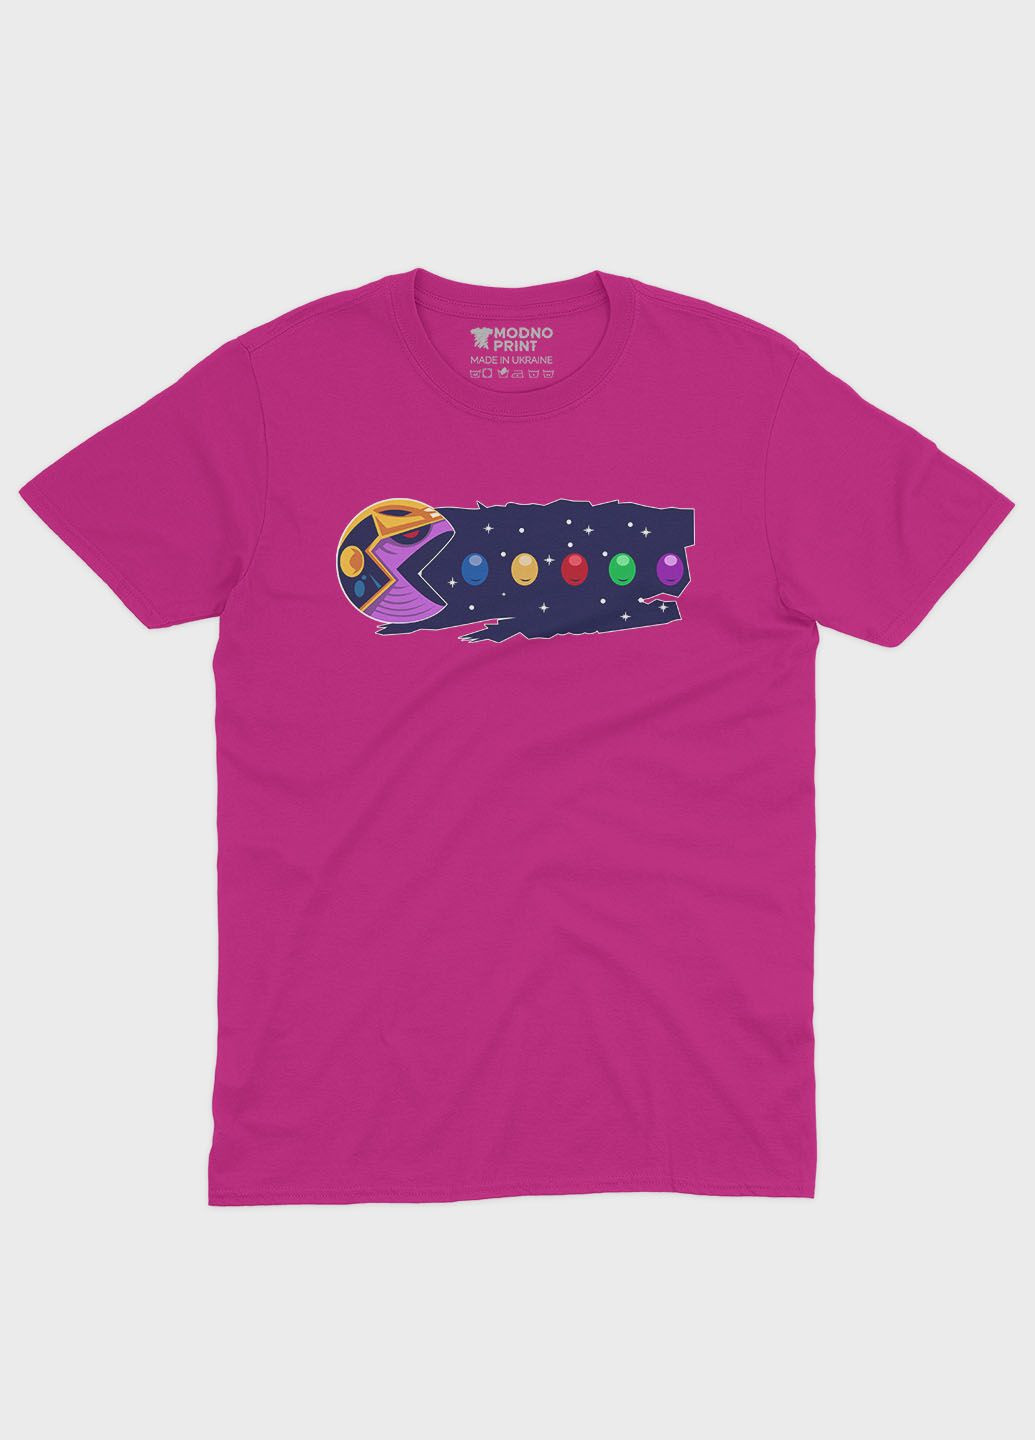 Розовая демисезонная футболка для мальчика с принтом супезлоды - танос (ts001-1-fuxj-006-019-015-b) Modno